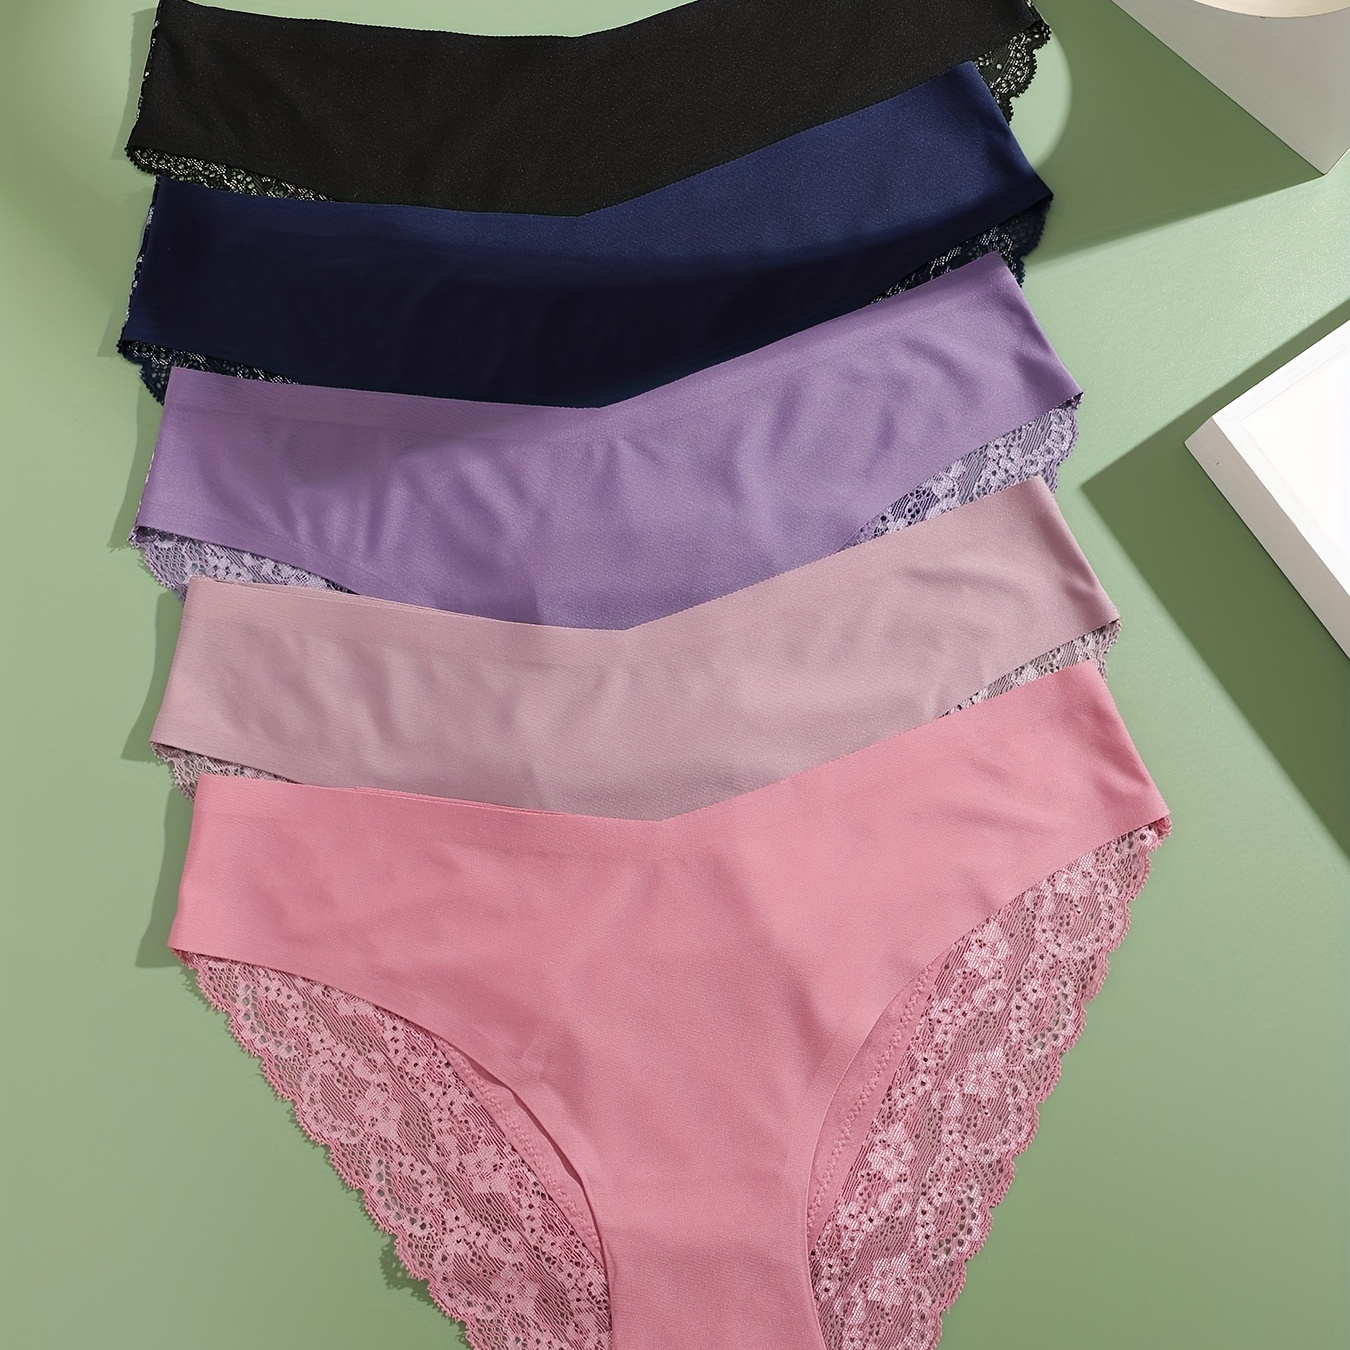 

5pcs Contrast Lace Briefs, Comfy & Breathable Scallop Trim Intimates Panties, Women's Lingerie & Underwear